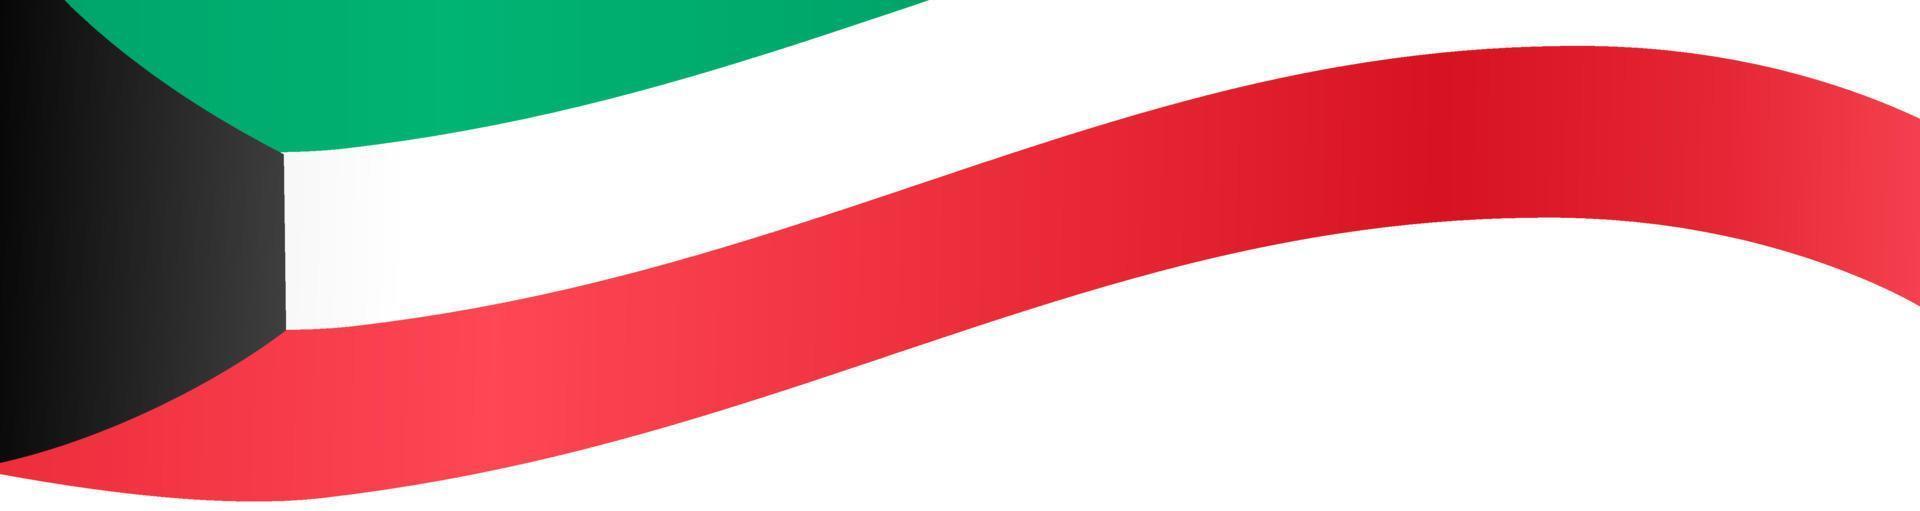 onda bandiera kuwait isolata su png o sfondo trasparente, simbolo kuwait. illustrazione vettoriale